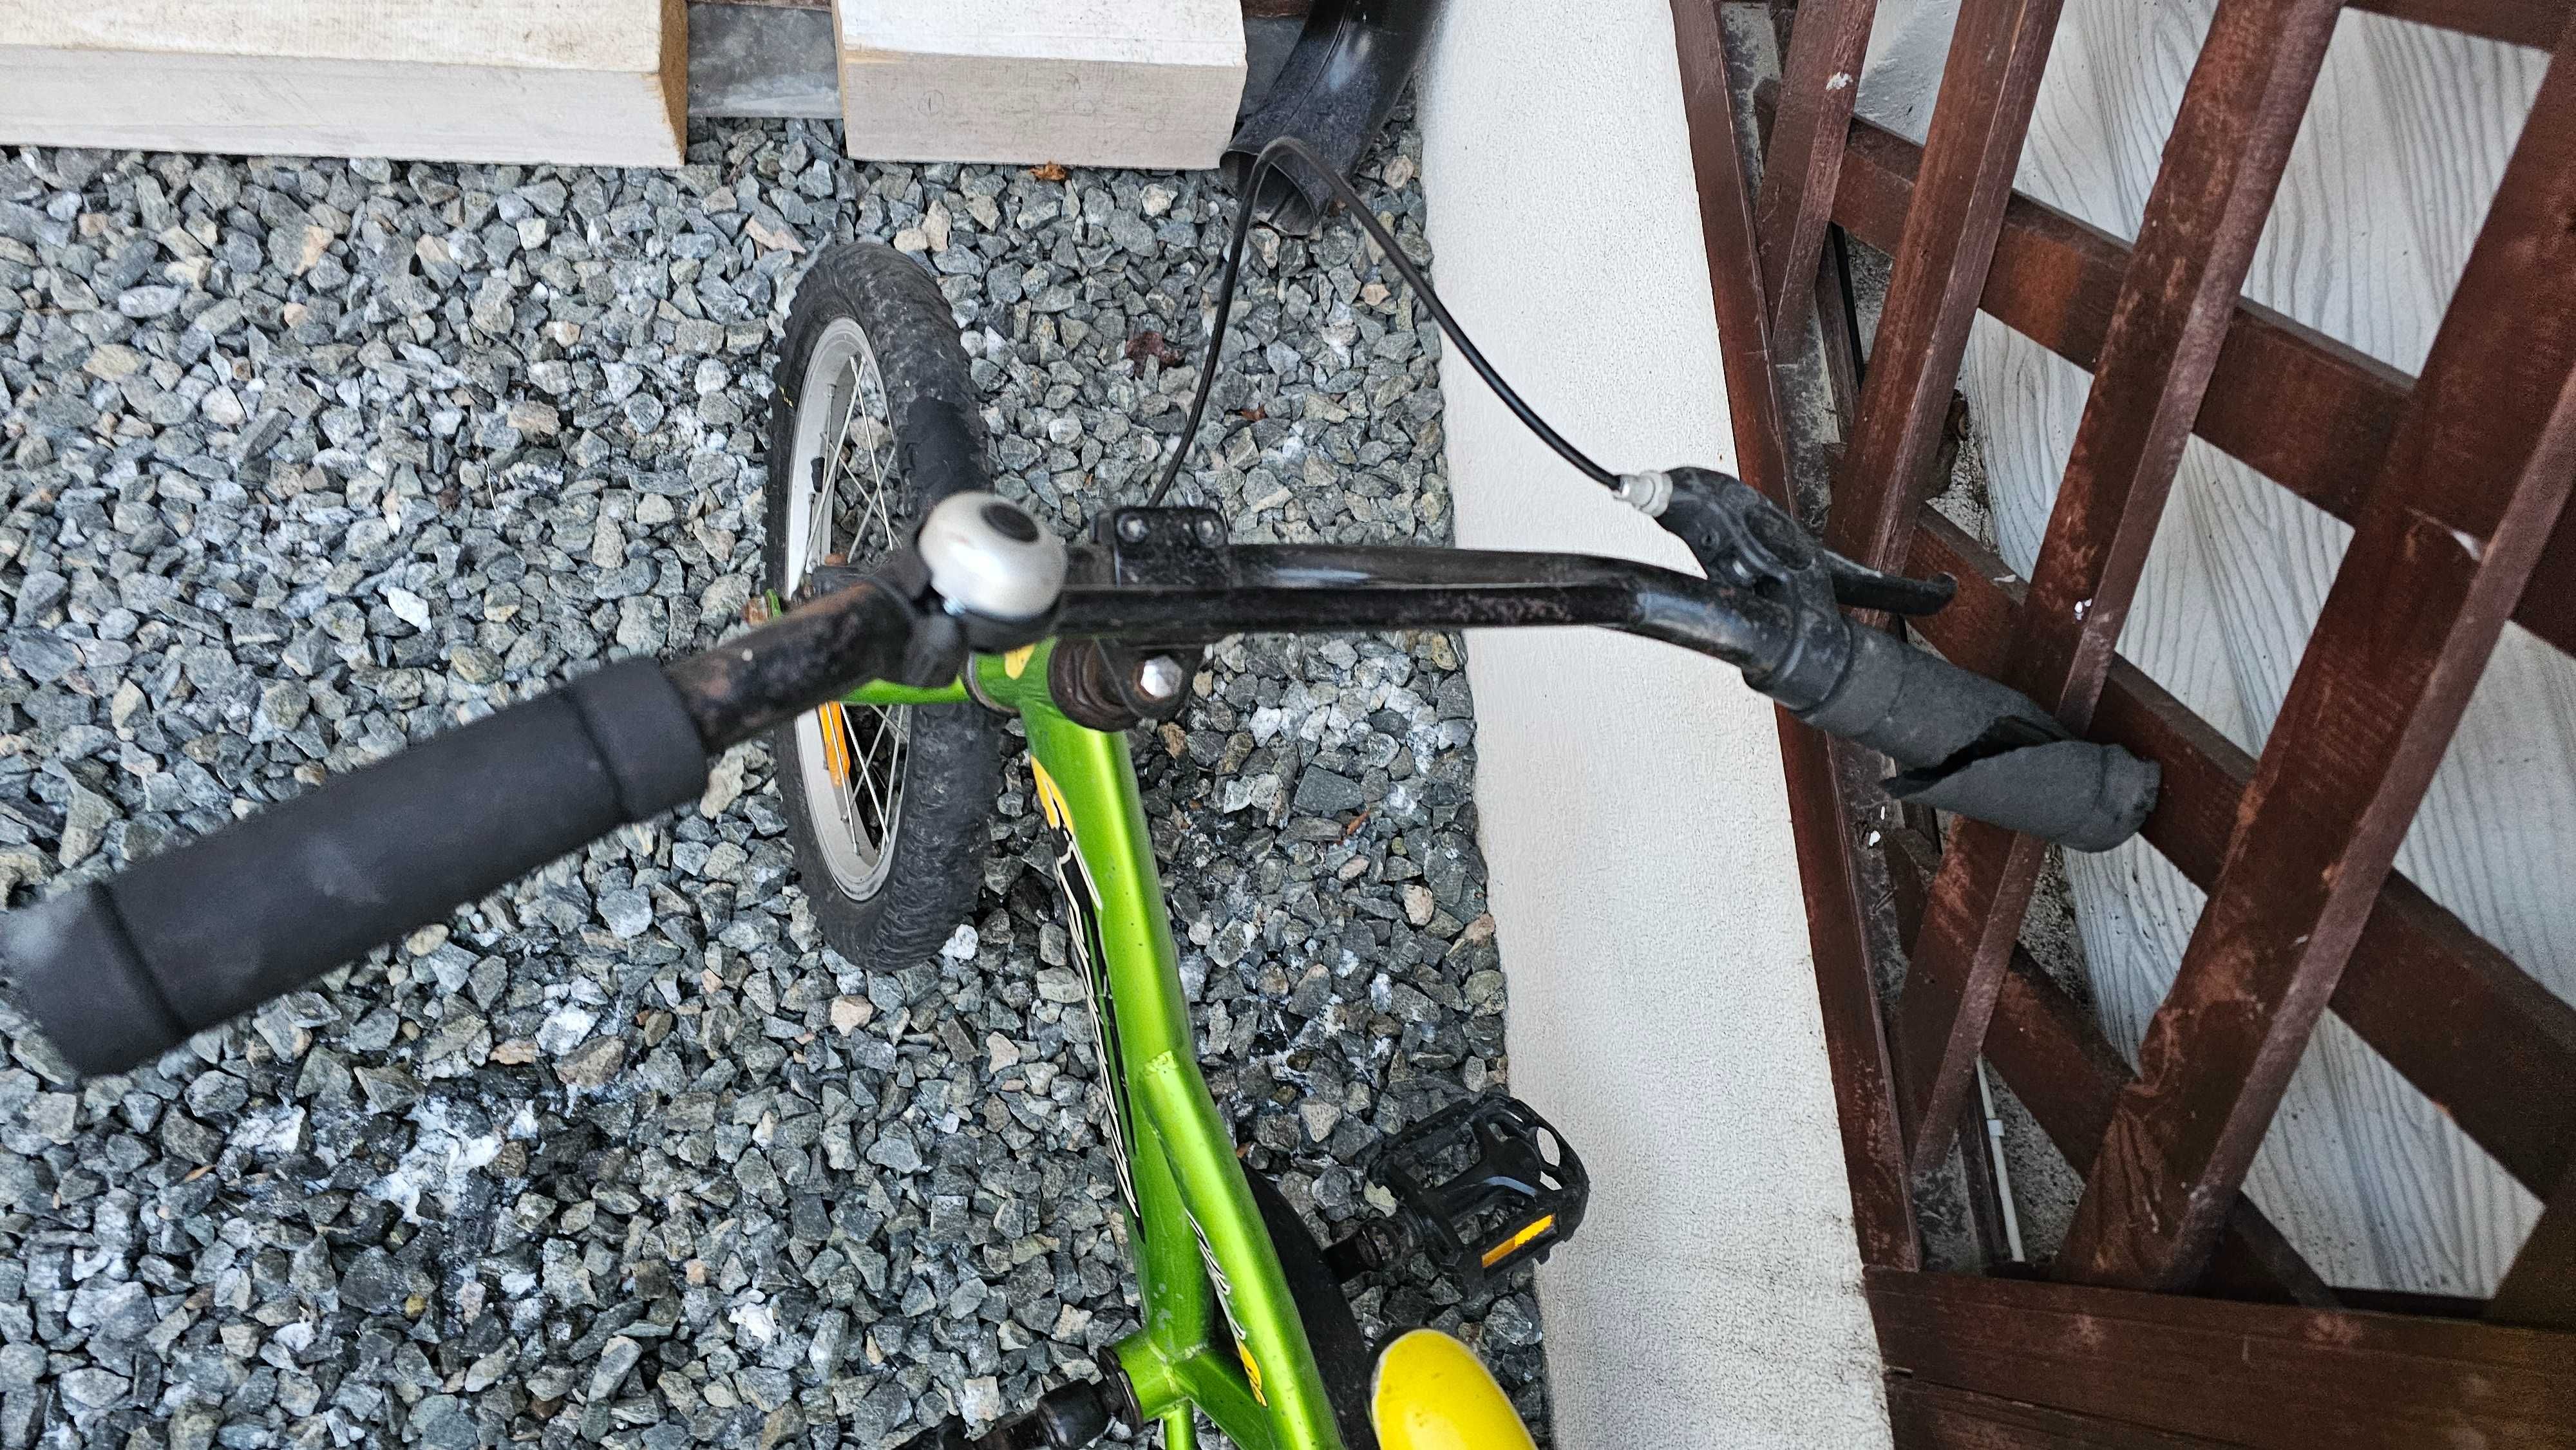 Bicicleta copii Passati Ninja 26"